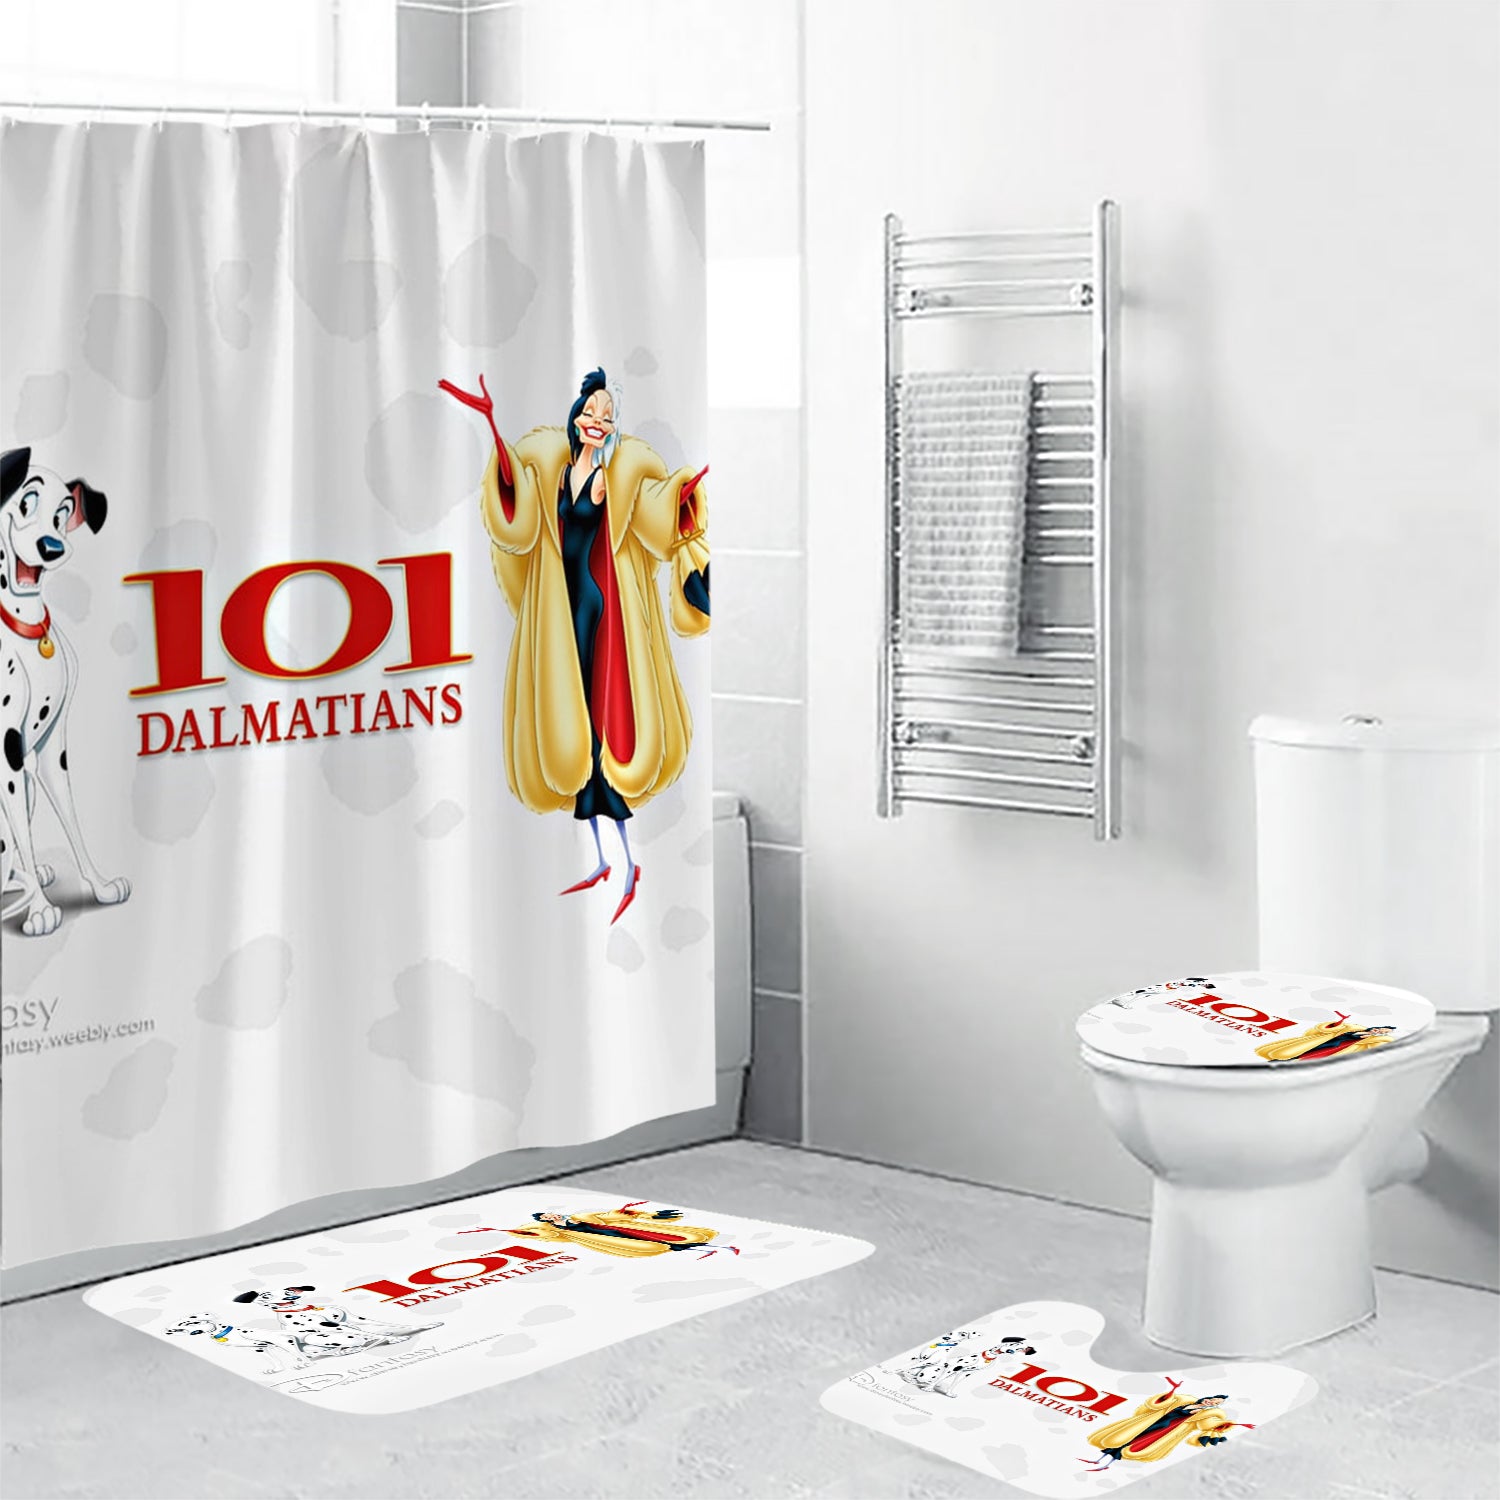 101 Dalmatians Poster 3 4PCS Shower Curtain Non-Slip Toilet Lid Cover Bath Mat - Bathroom Set Fans Gifts